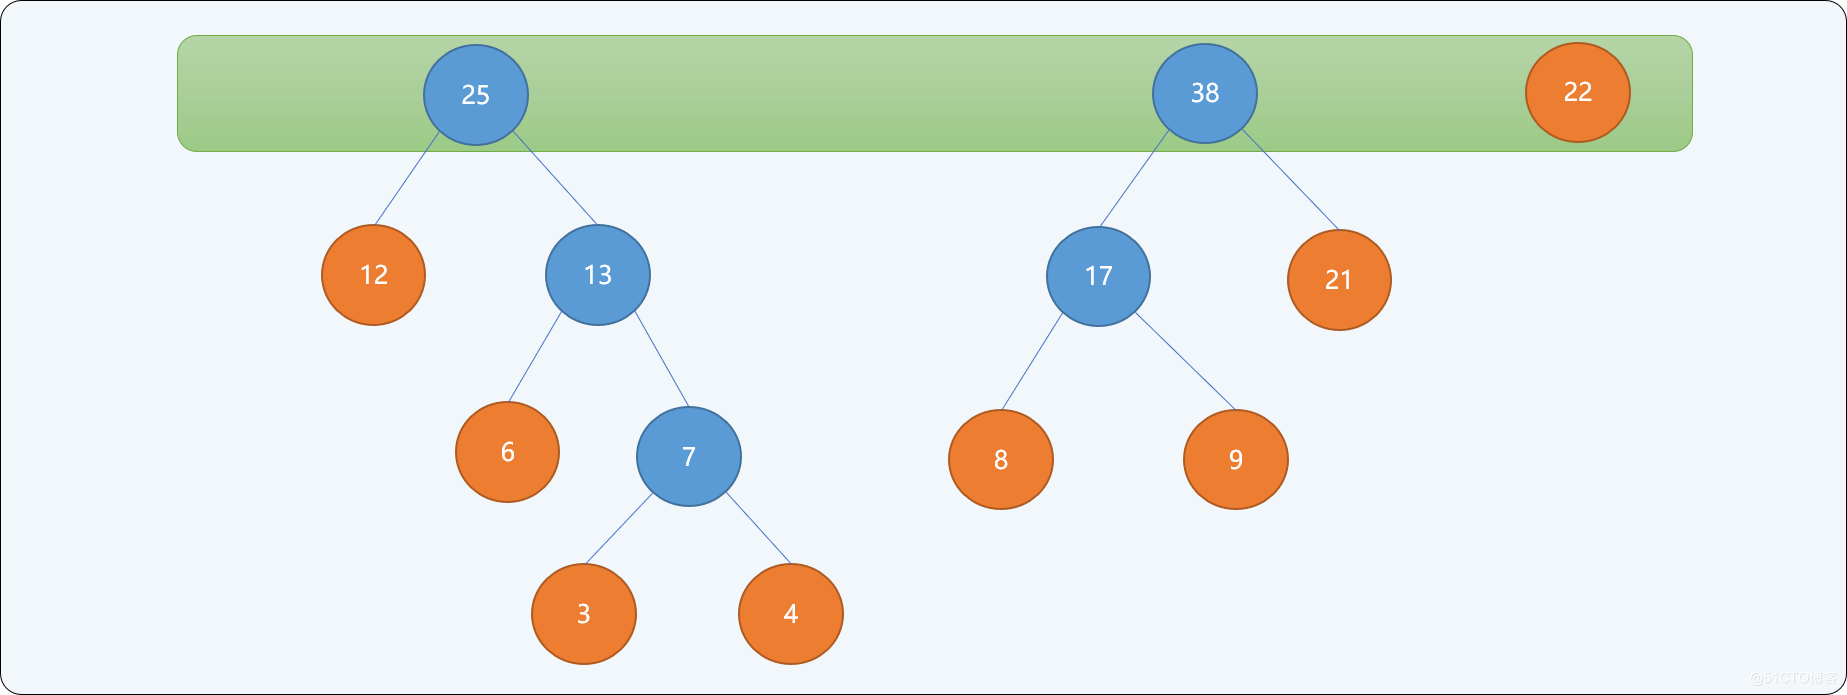 C++哈夫曼树的原理是什么及怎么实现